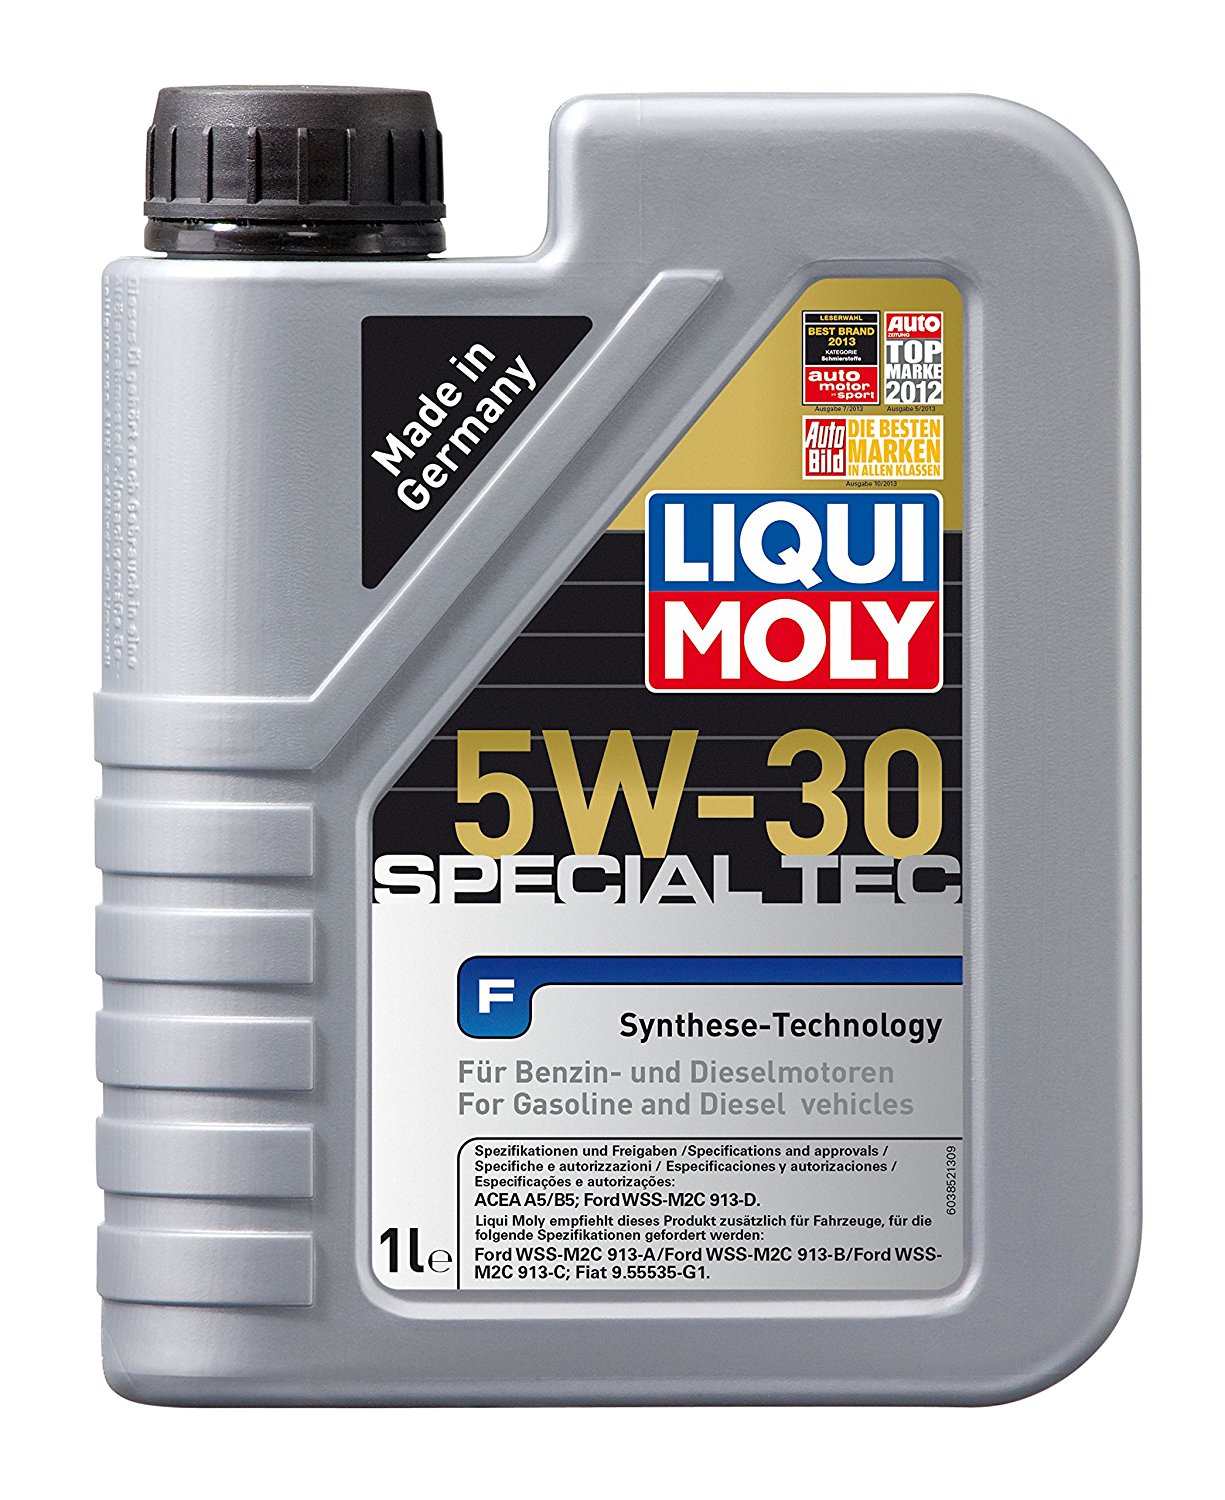 5W-30 Liqui Moly 3852 Special Tec F Motoröl 1 Liter